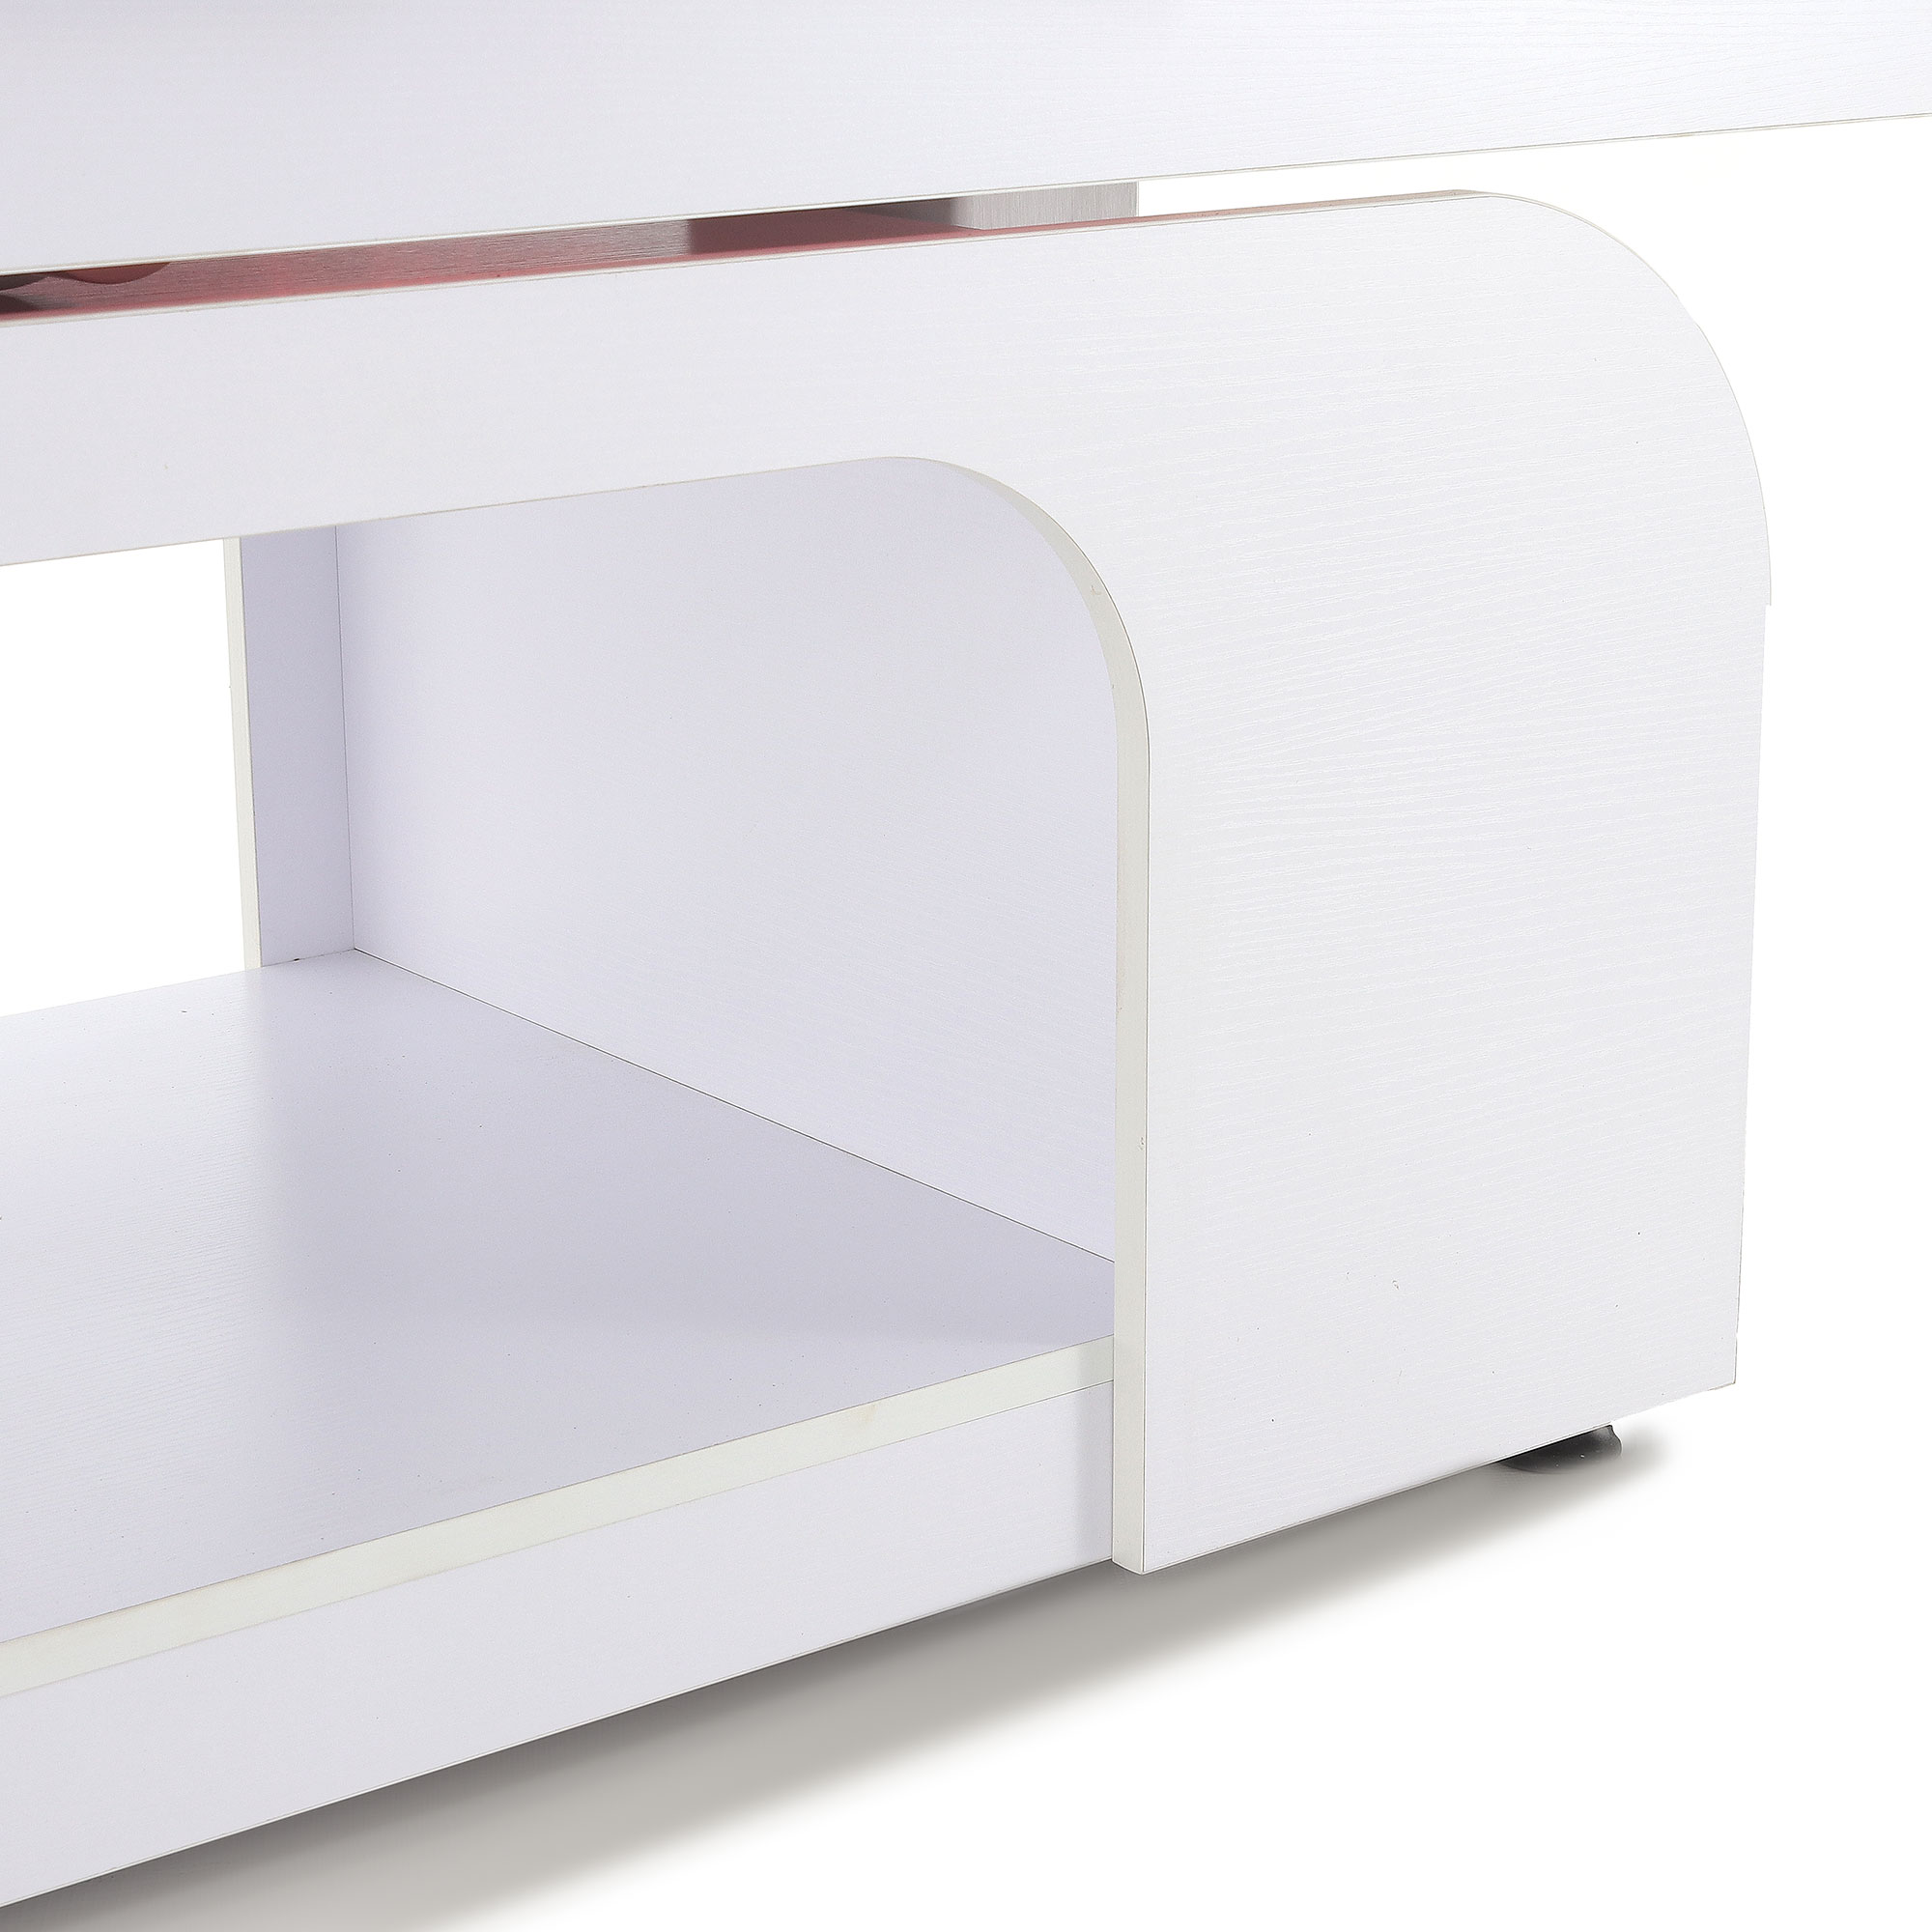 Стационарный массажный стол Med-Mos ММКМ-2 (КО-153Д), белый